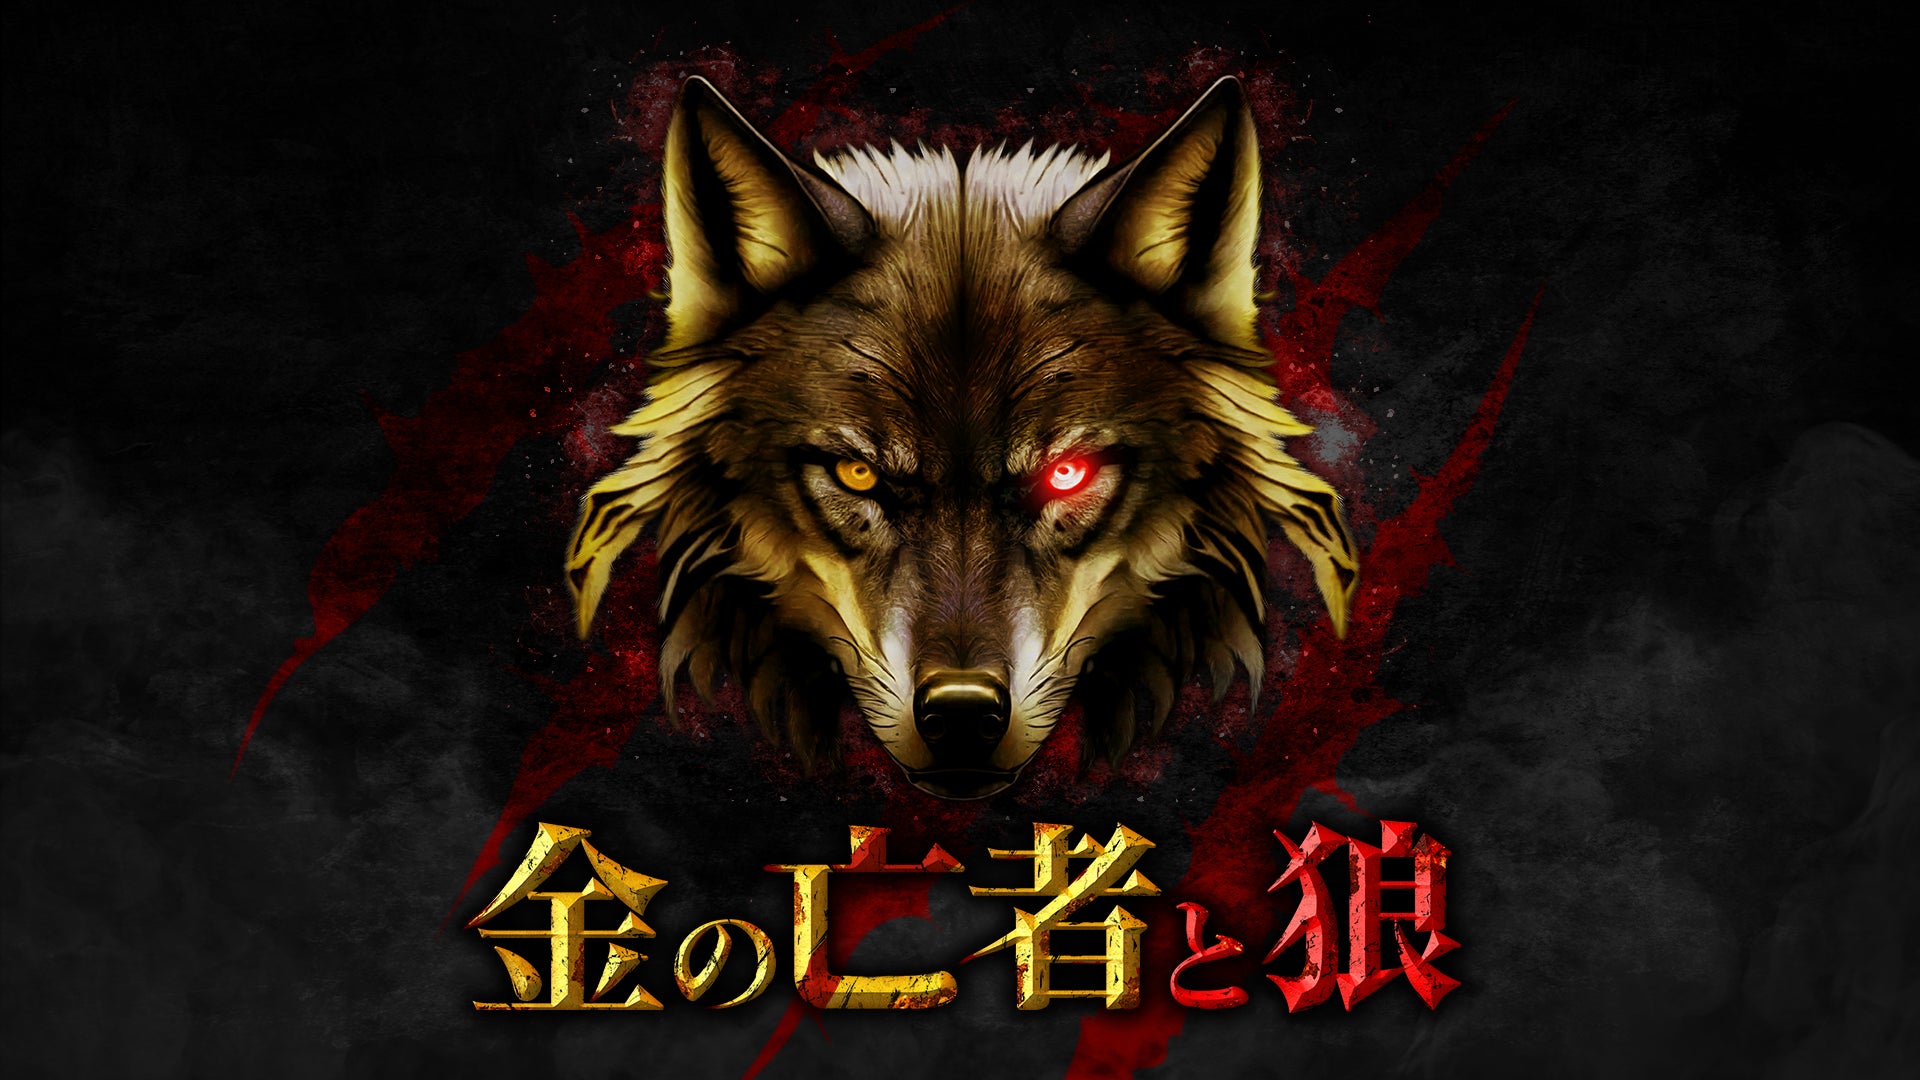 新感覚マネーゲームリアリティショー『金の亡者と狼』Leminoにて独占配信決定！